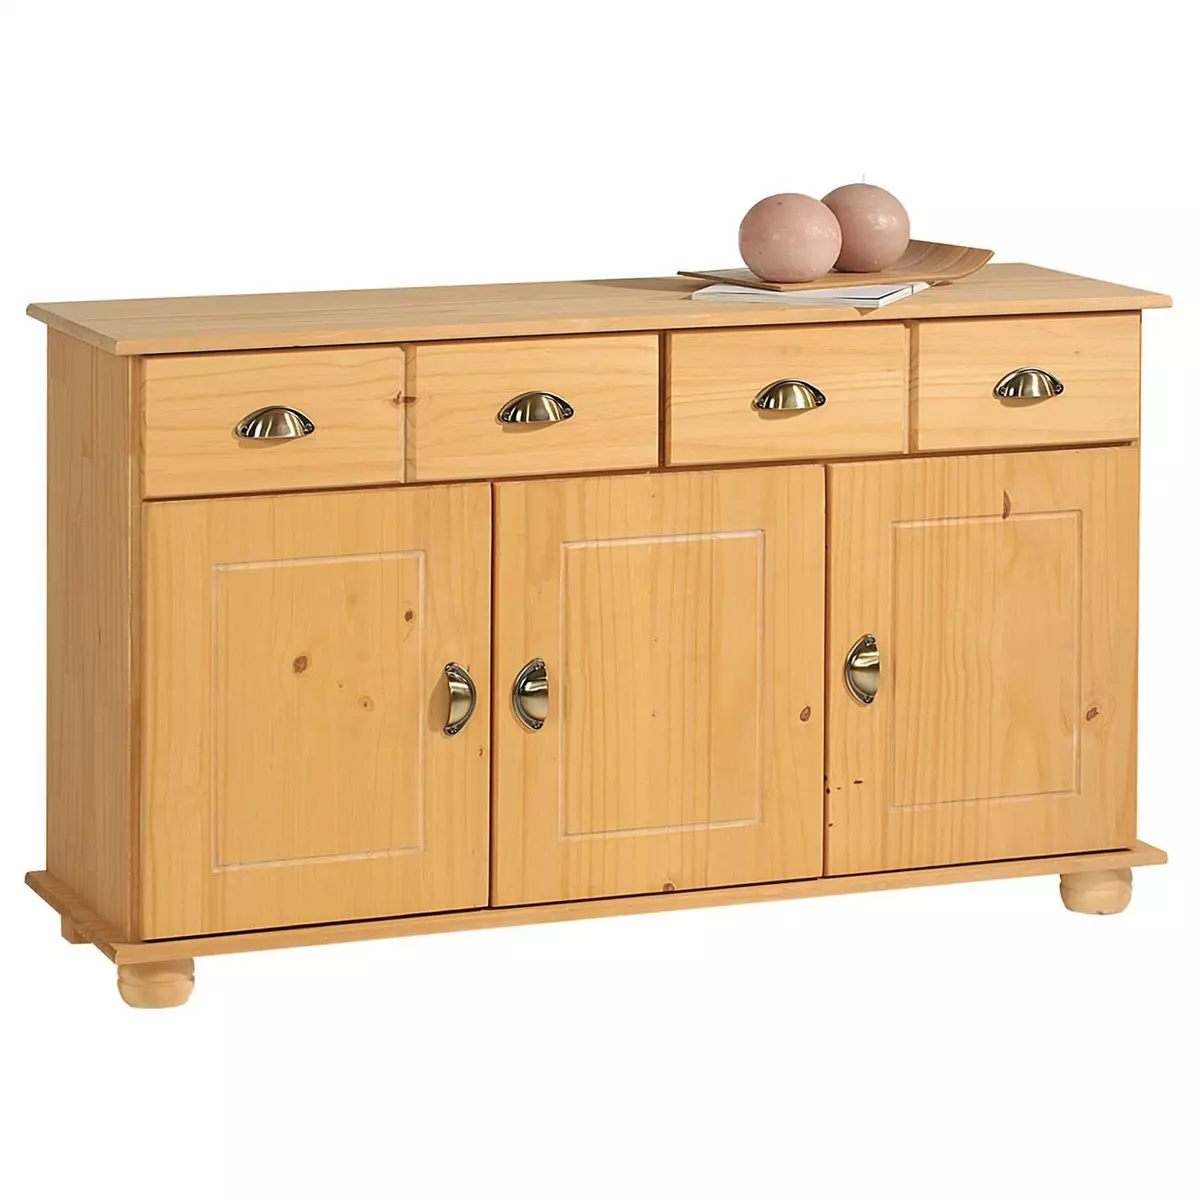 IDIMEX Buffet COLMAR commode bahut vaisselier meuble bas rangement avec 2 tiroirs et 3 portes, en pin massif ciré